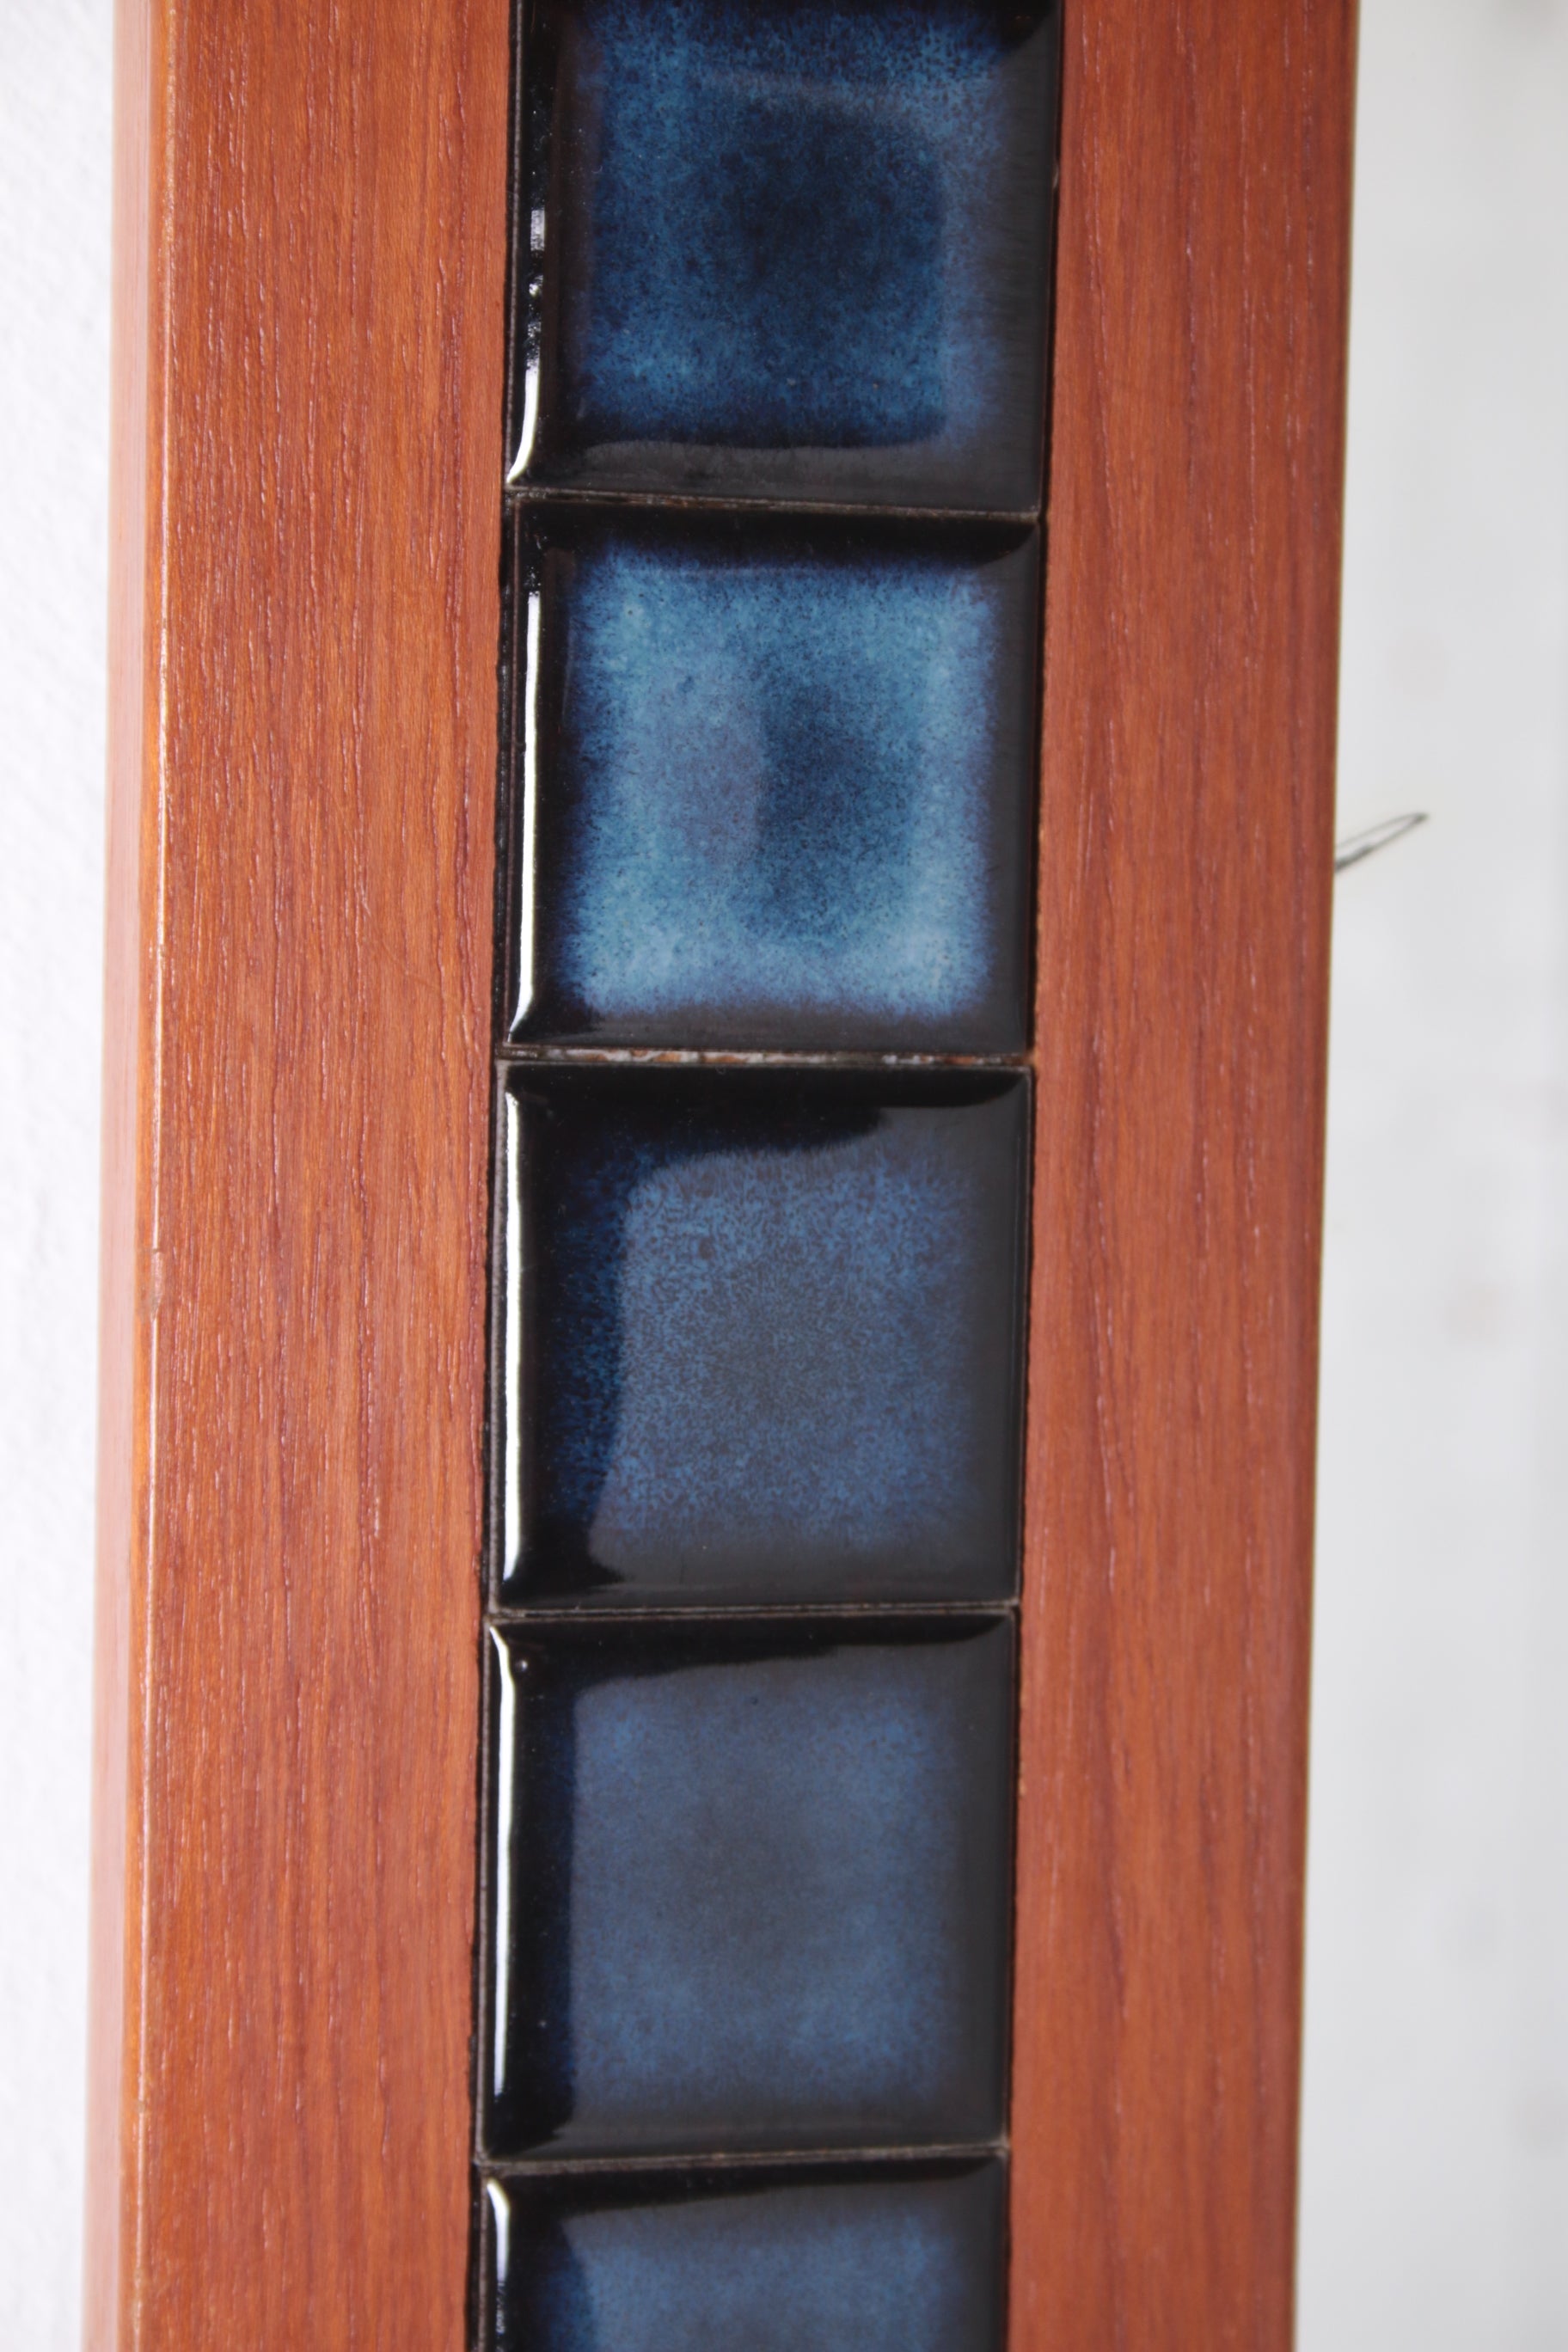 Blauwe Scandinavische tegeltjes spiegel langwerpig met teak hout detail tegeltjes rand